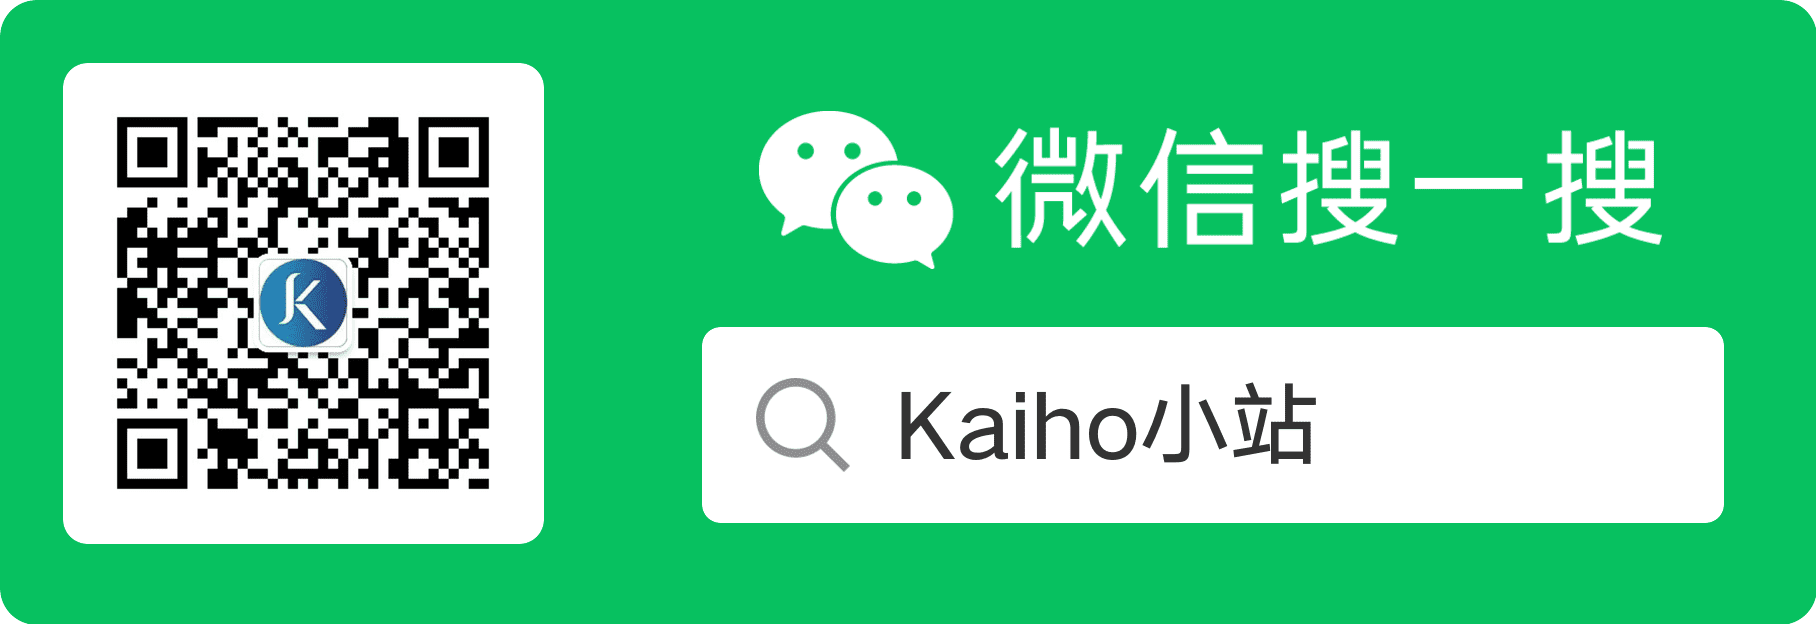 微信公众号：Kaiho小站